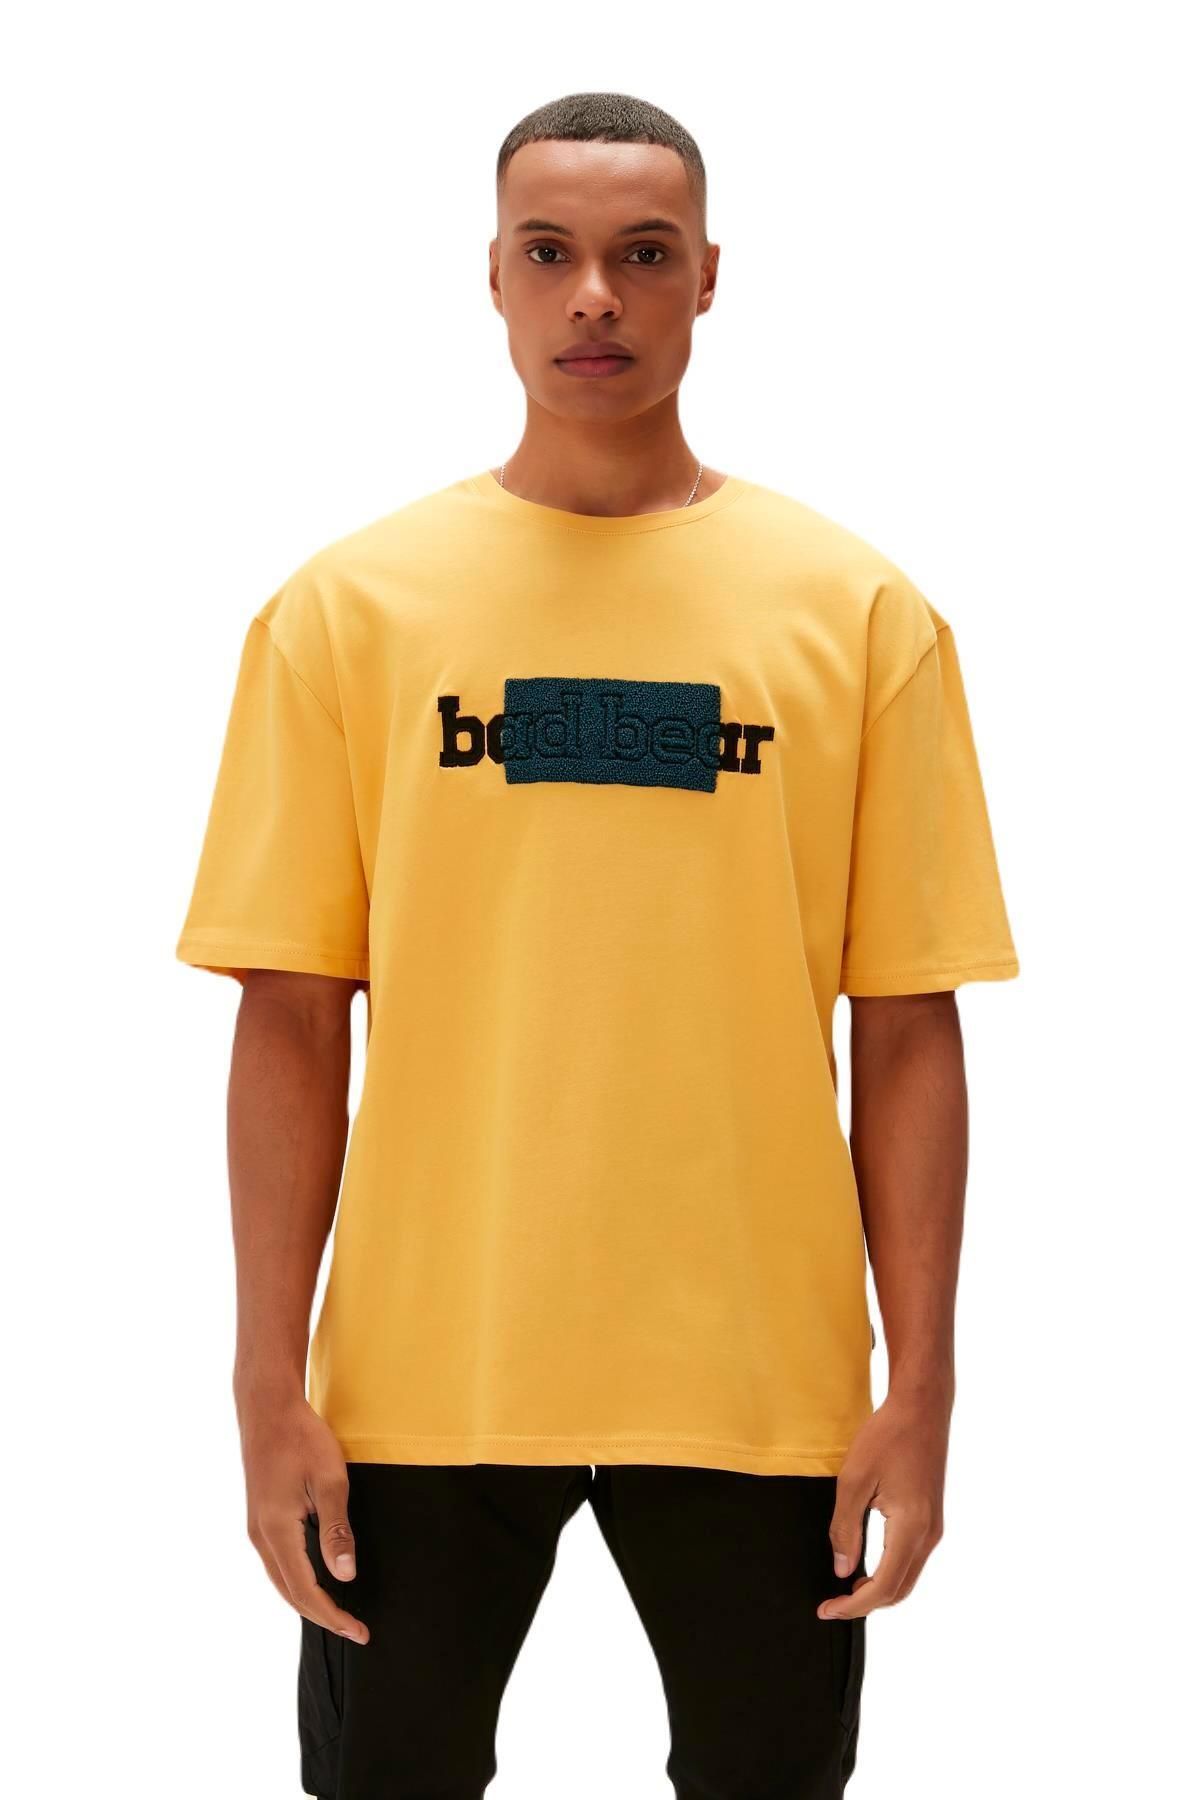 Bad Bear 23.01.07.039-c25 Taped Erkek T-shirt